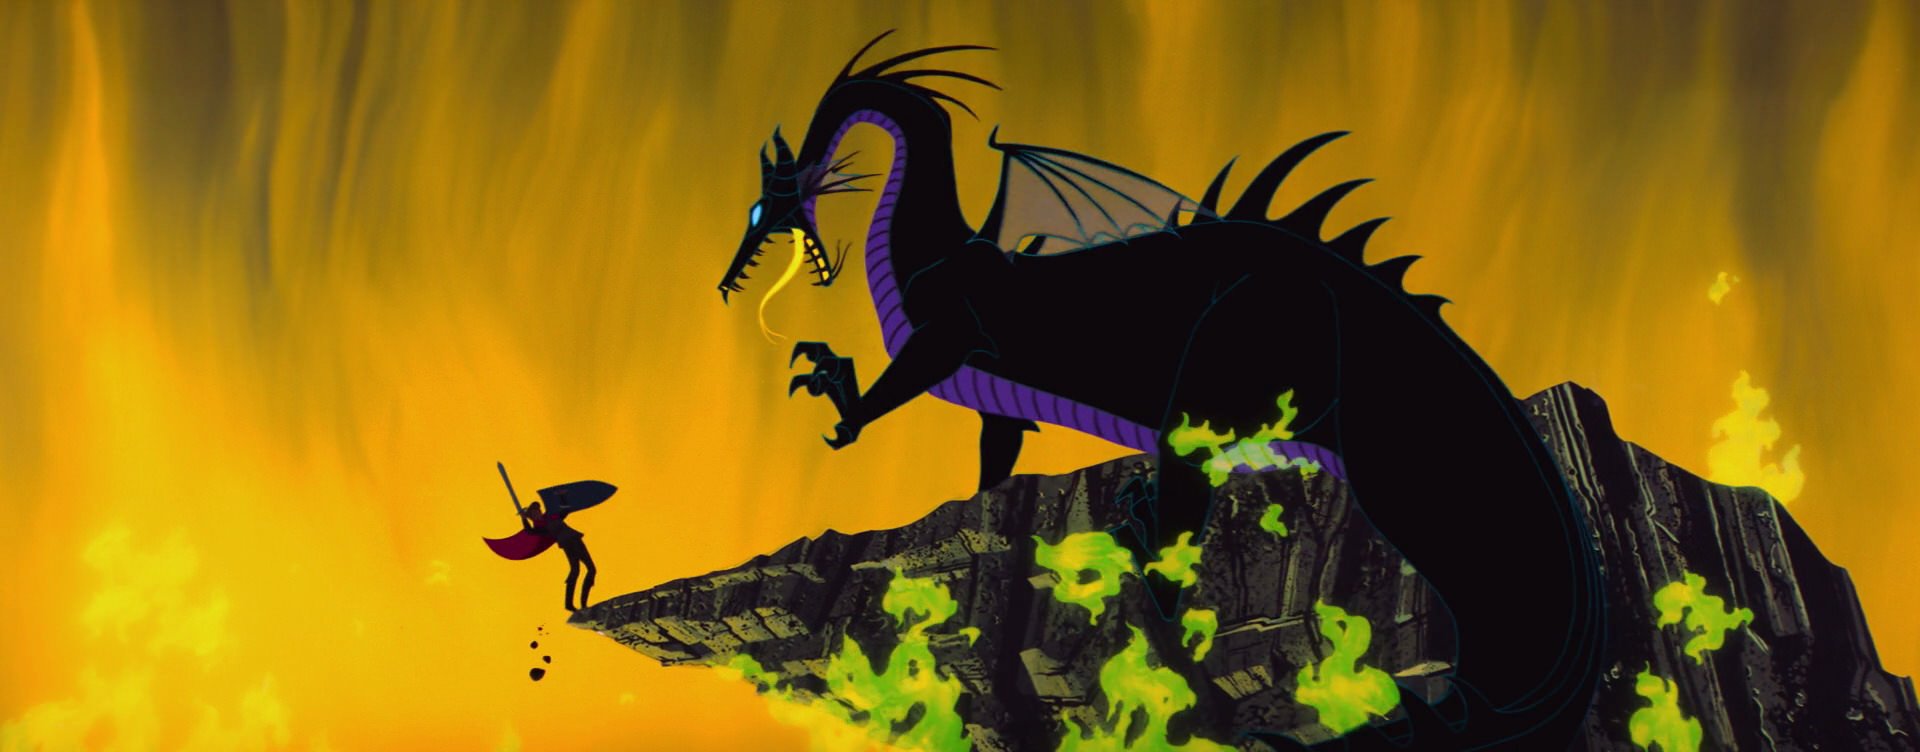 Luta entre príncipe Philip e Malévola como dragão em 'A Bela Adormecida' (1959)